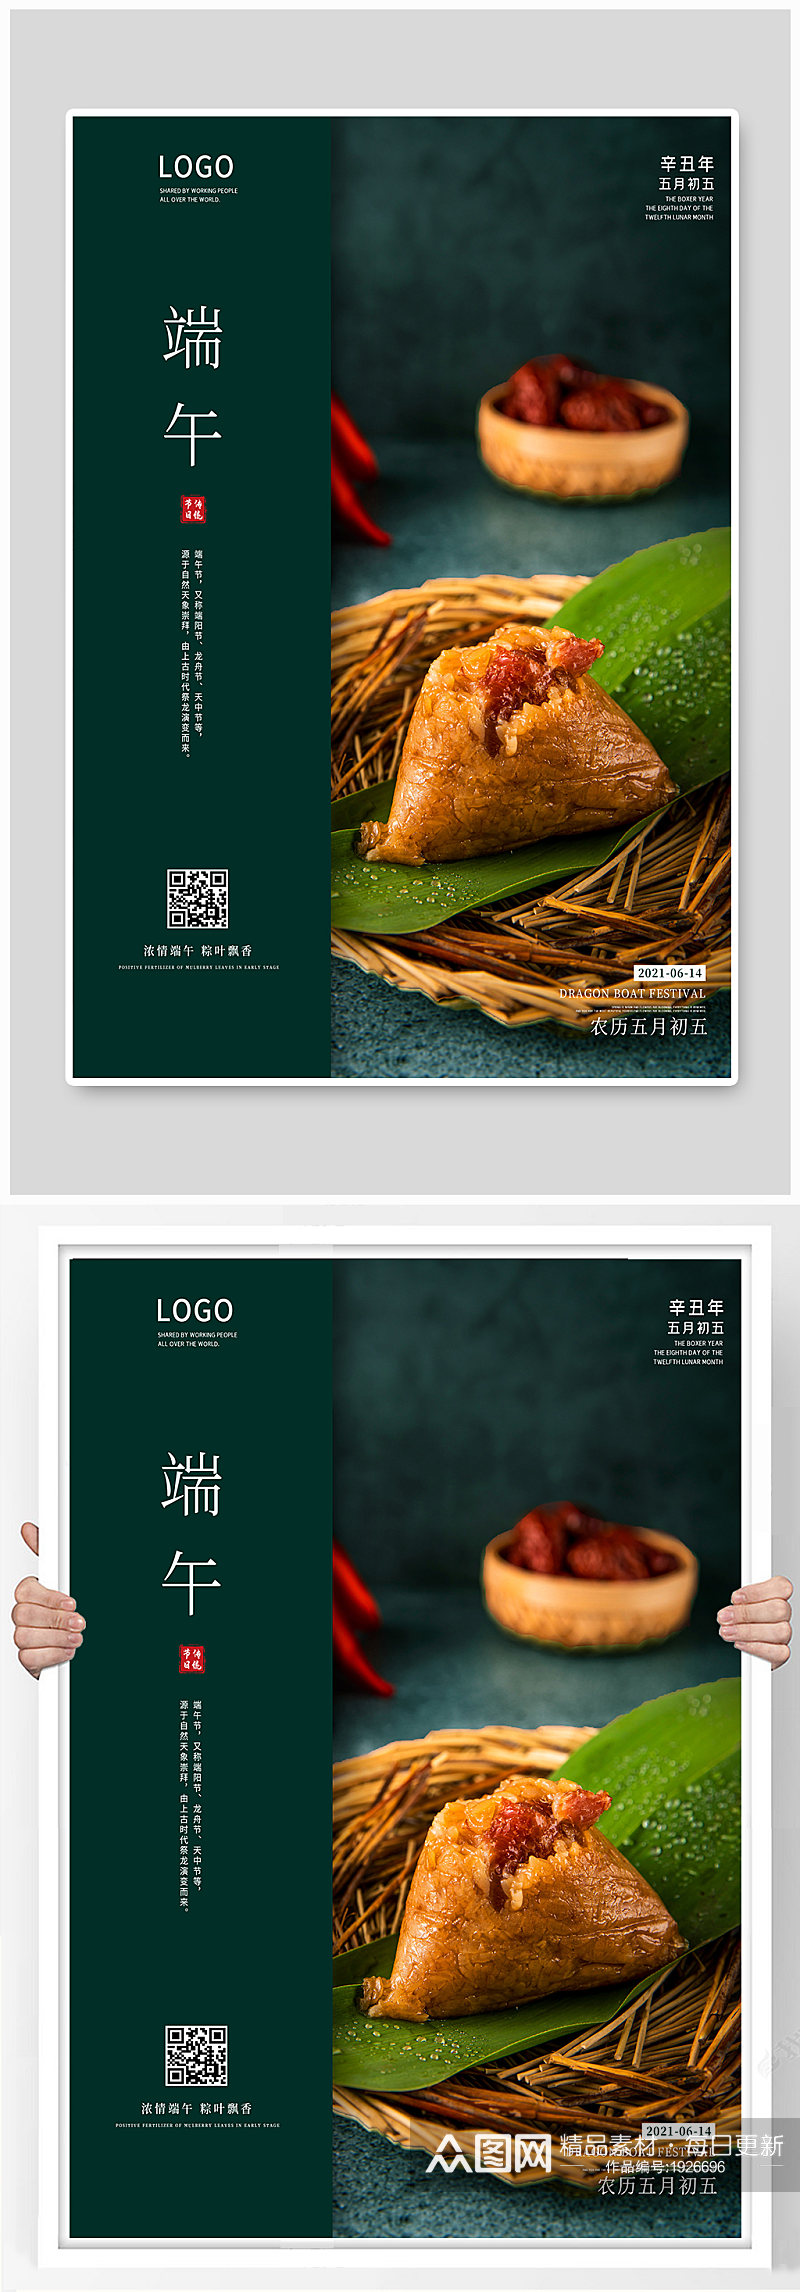 端午节海报传统节日粽子国潮美食龙舟摄影素材